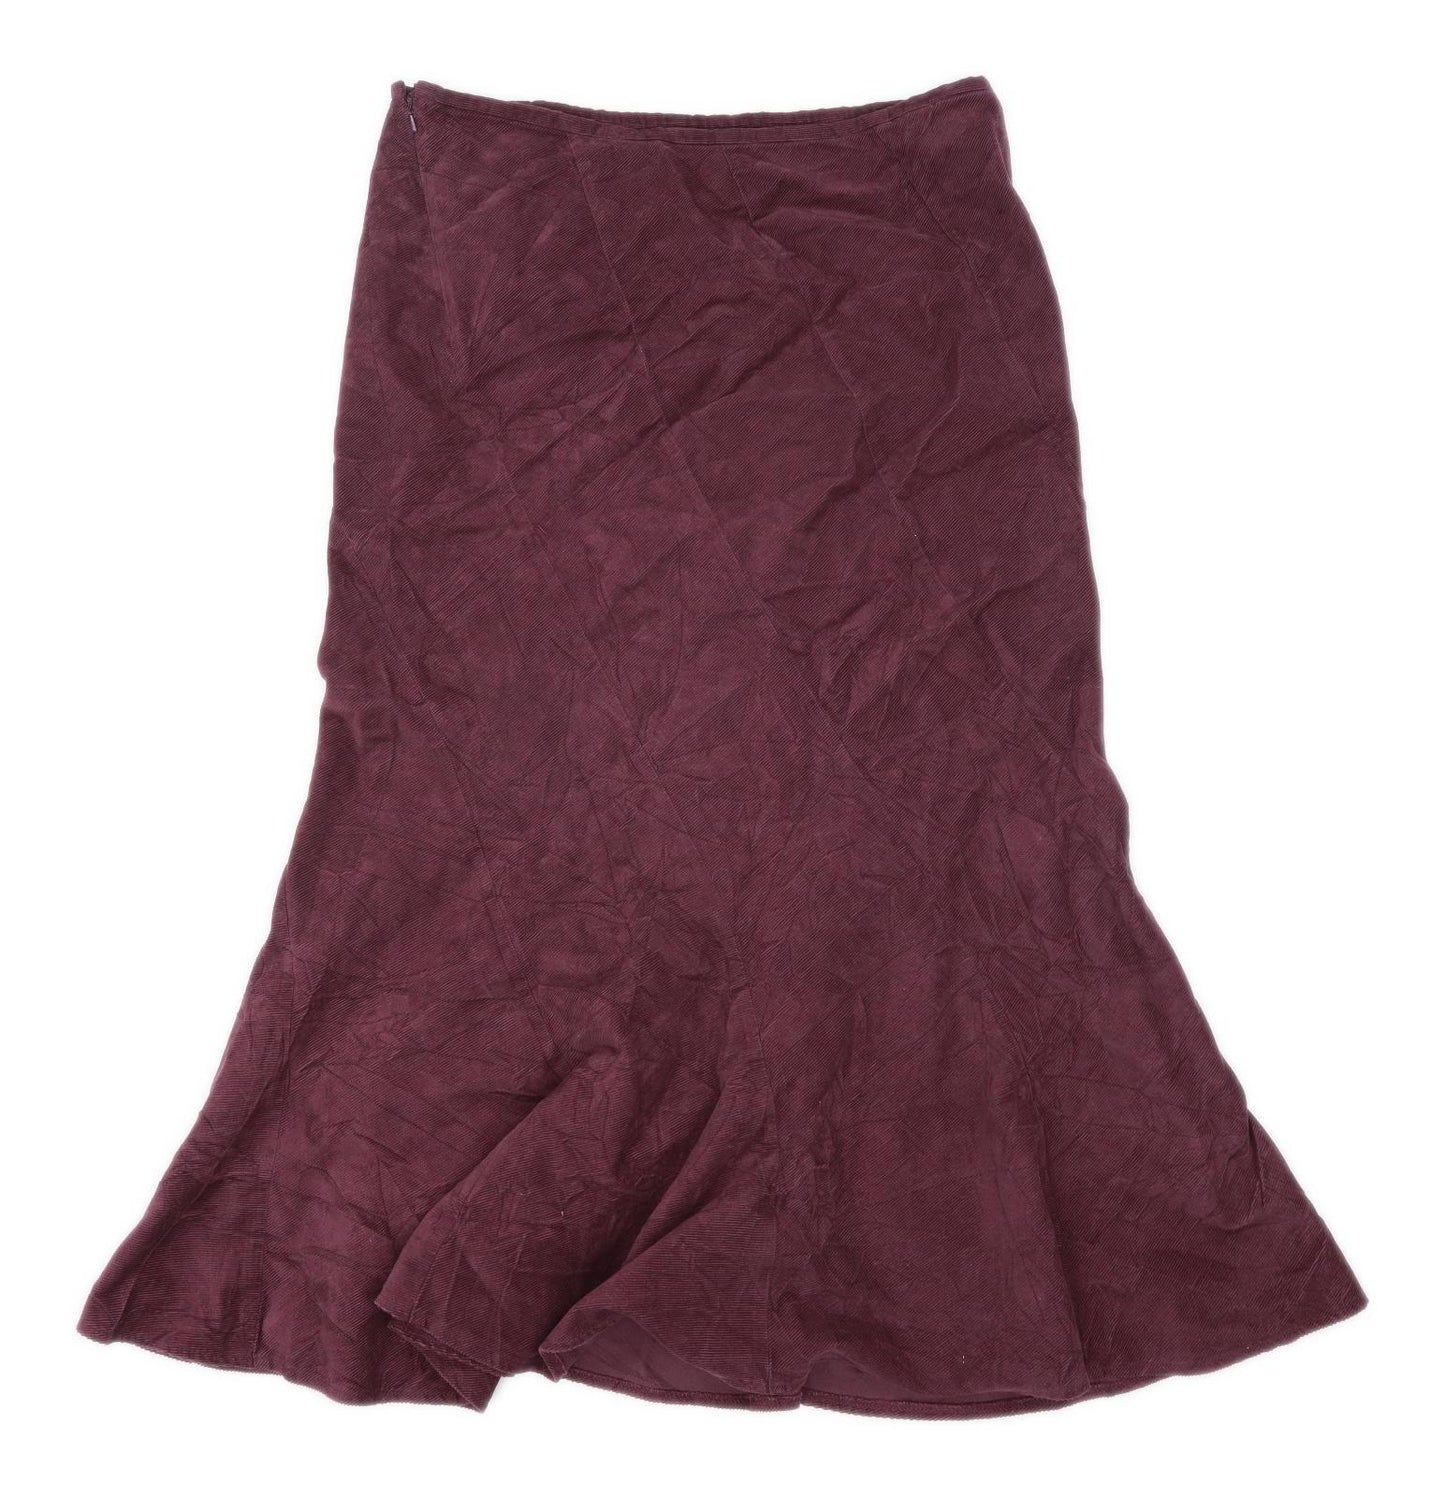 Marks & Spencer Womens Size 14 Corduroy Burgundy Skirt (Regular)